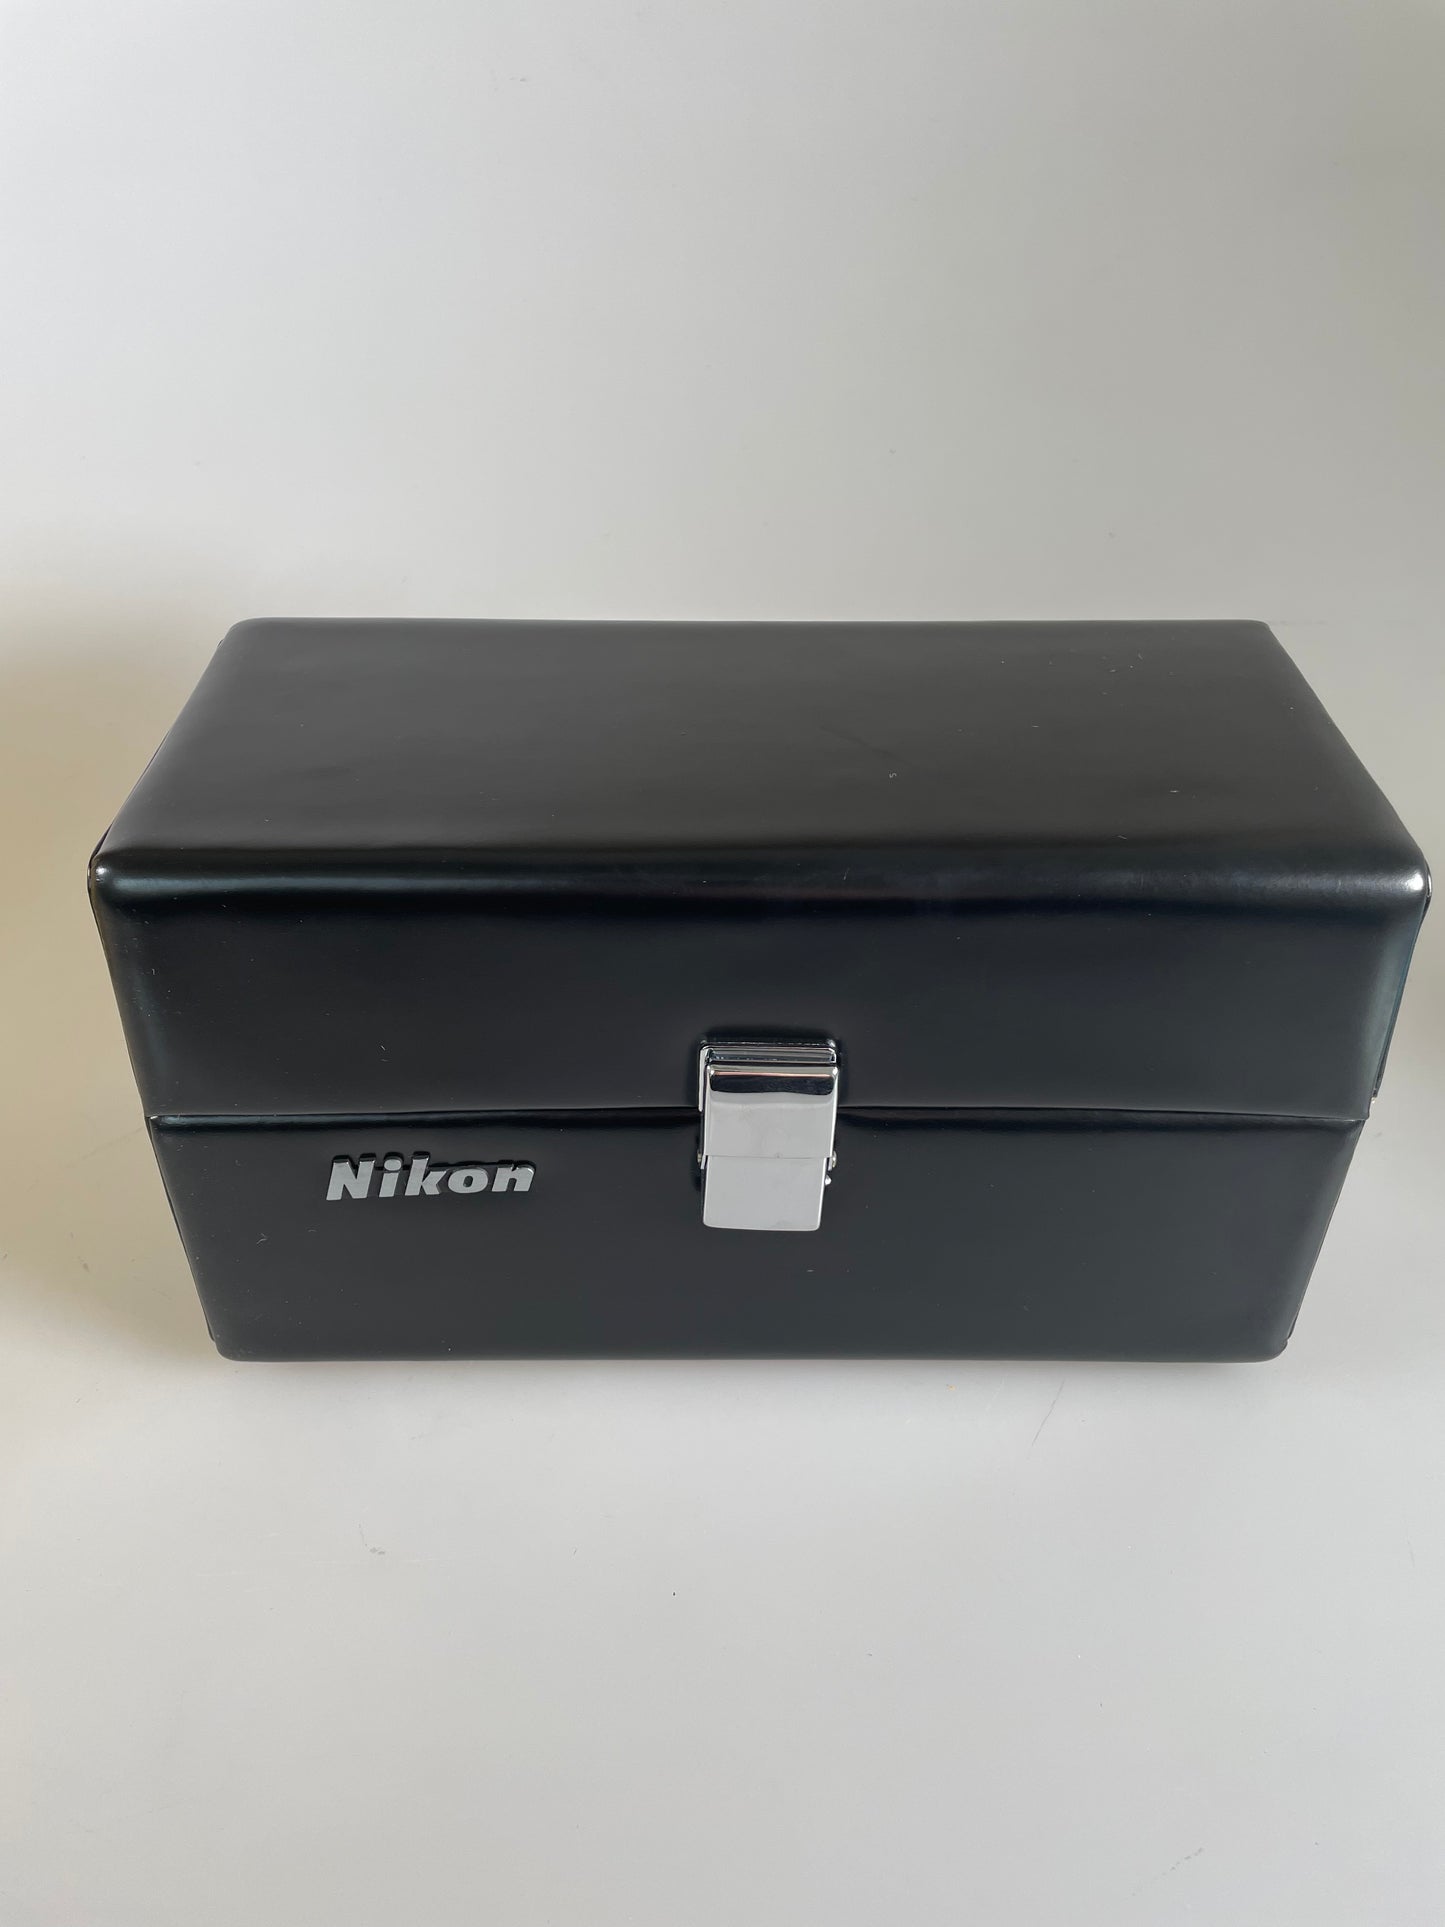 Nikon Super 8 Zoom Camera Carry Case Vintage black leather